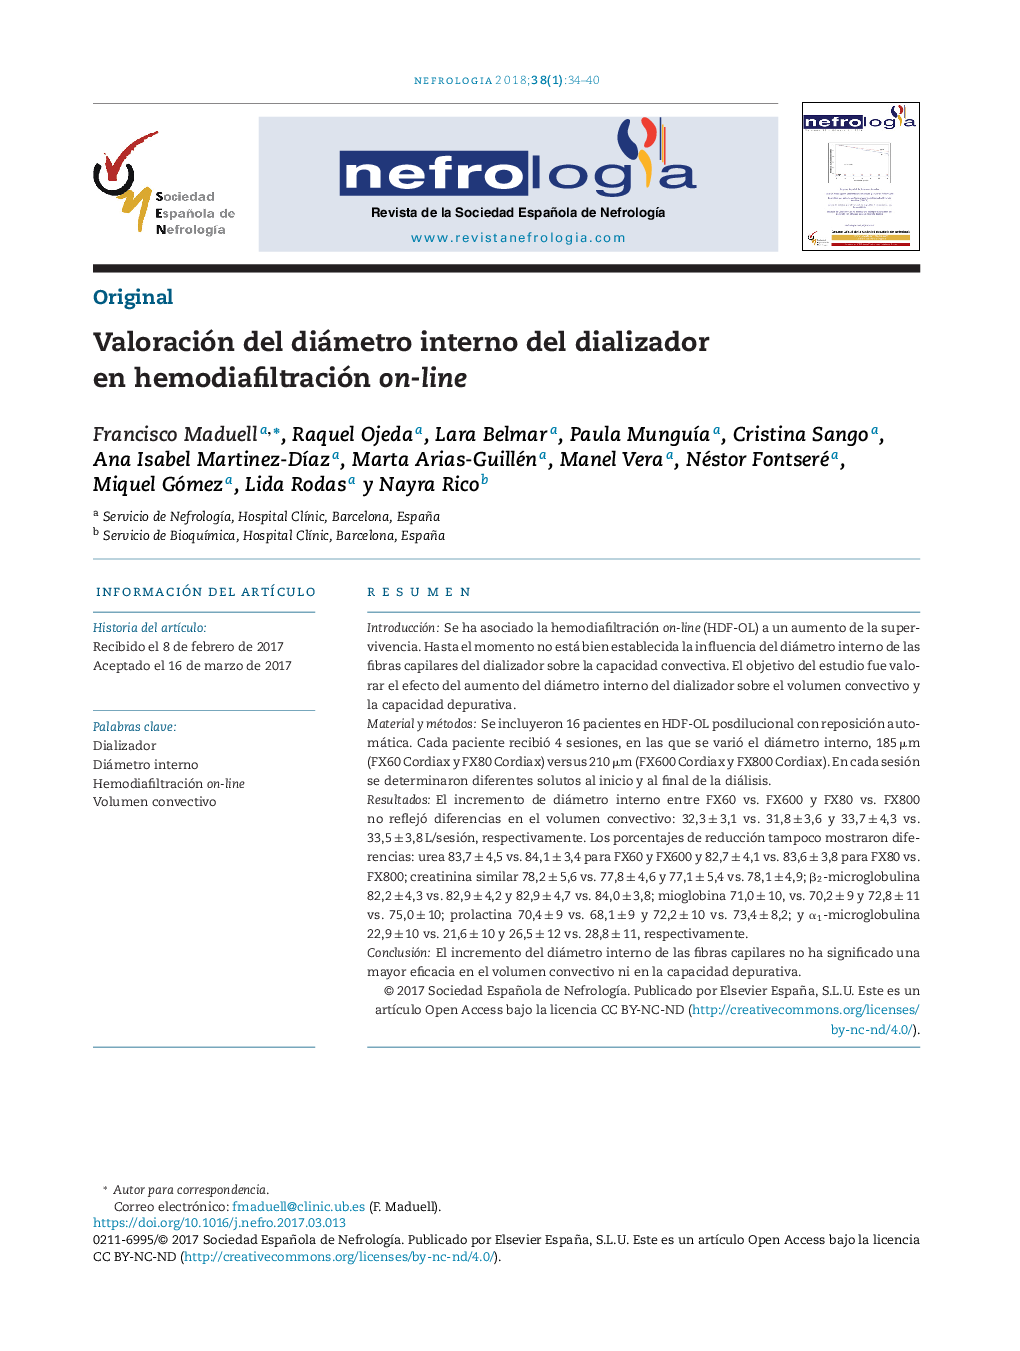 Valoración del diámetro interno del dializador en hemodiafiltración on-line